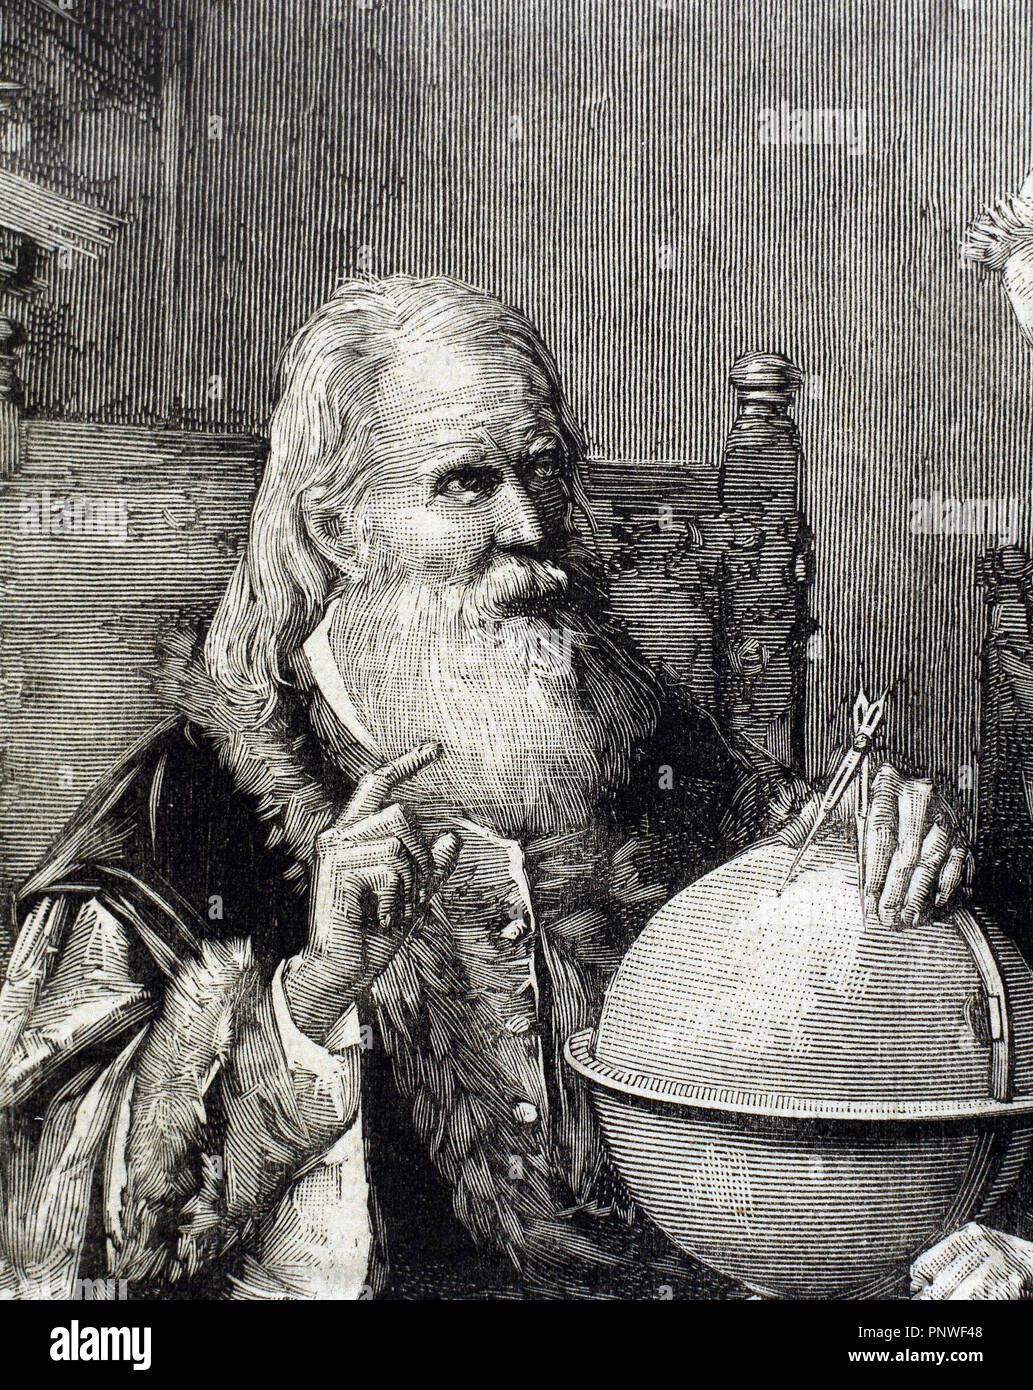 Galileo Galilei (1564-1642). Physiker, Mathematiker und Astronom. Galileo demonstriert seine astronomischen Theorien. Kupferstich von Rico in der "spanischen und amerikanischen Illustration" (1884). Stockfoto